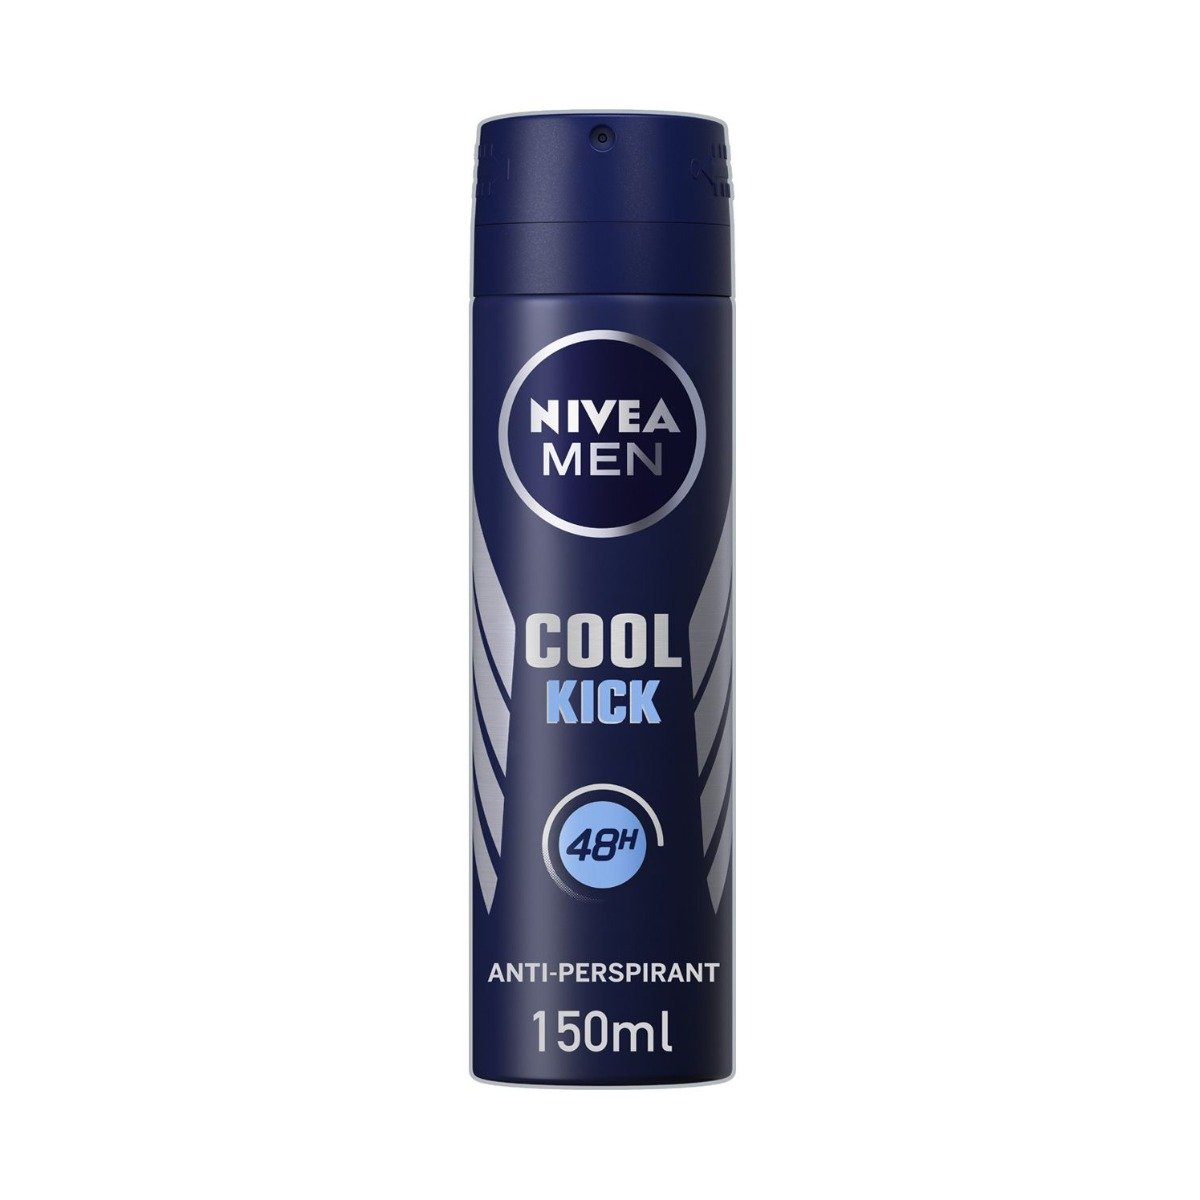 Nivea Men Cool Kick Antiperspirant Body Spray - 150ml - Bloom Pharmacy